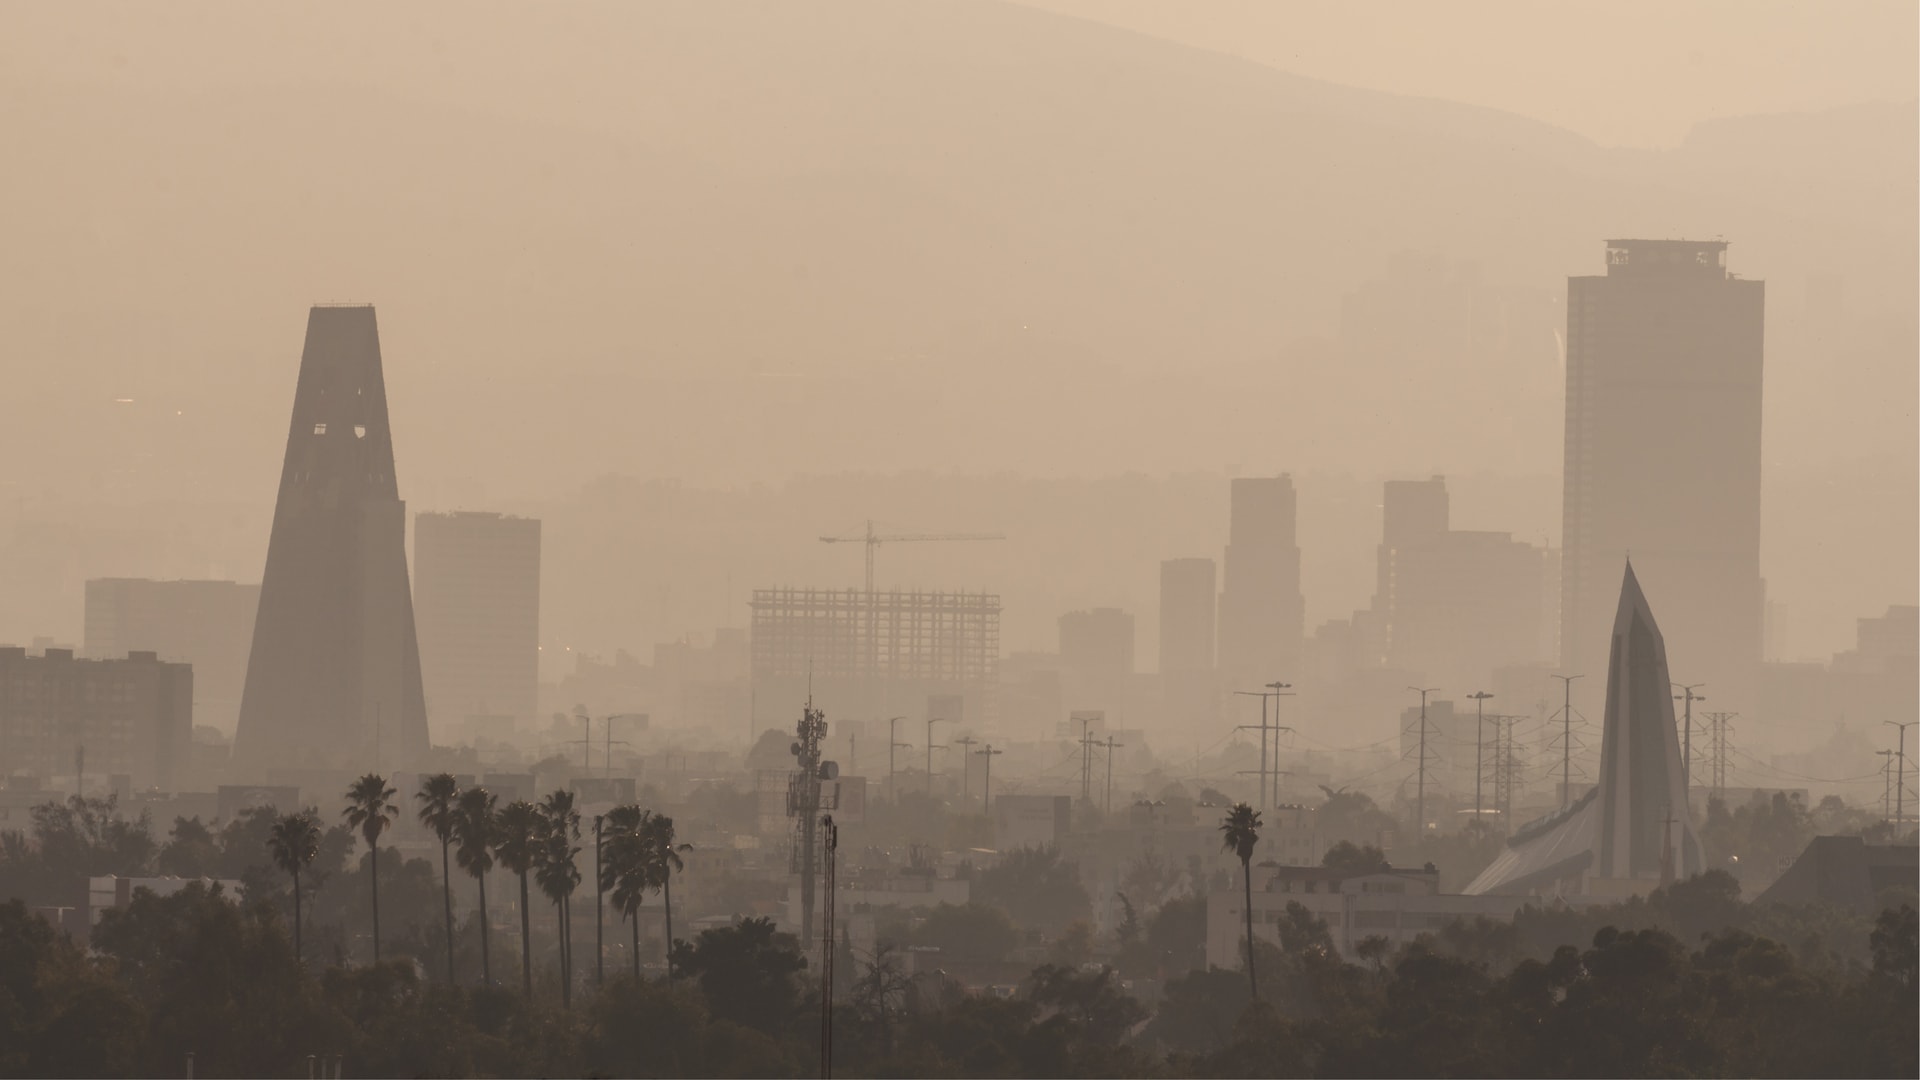 Быстрое промышленное развитие означает, что город превратился из одного из самых известных в мире чистого воздуха в воздух, в котором содержание диоксида азота даже в два раза превышает норму